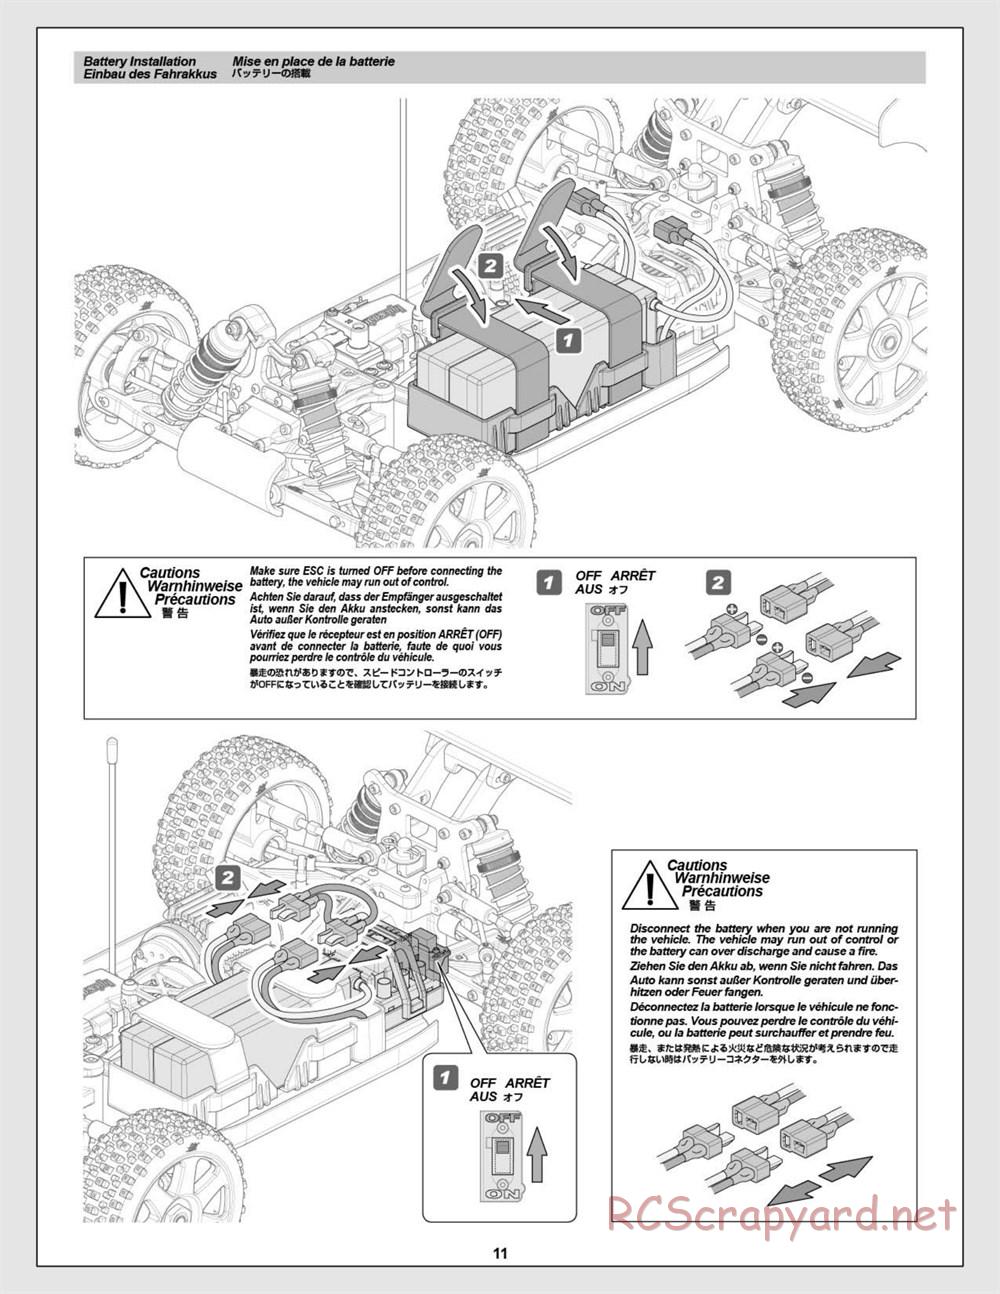 HPI - Vorza Flux HP - Manual - Page 11